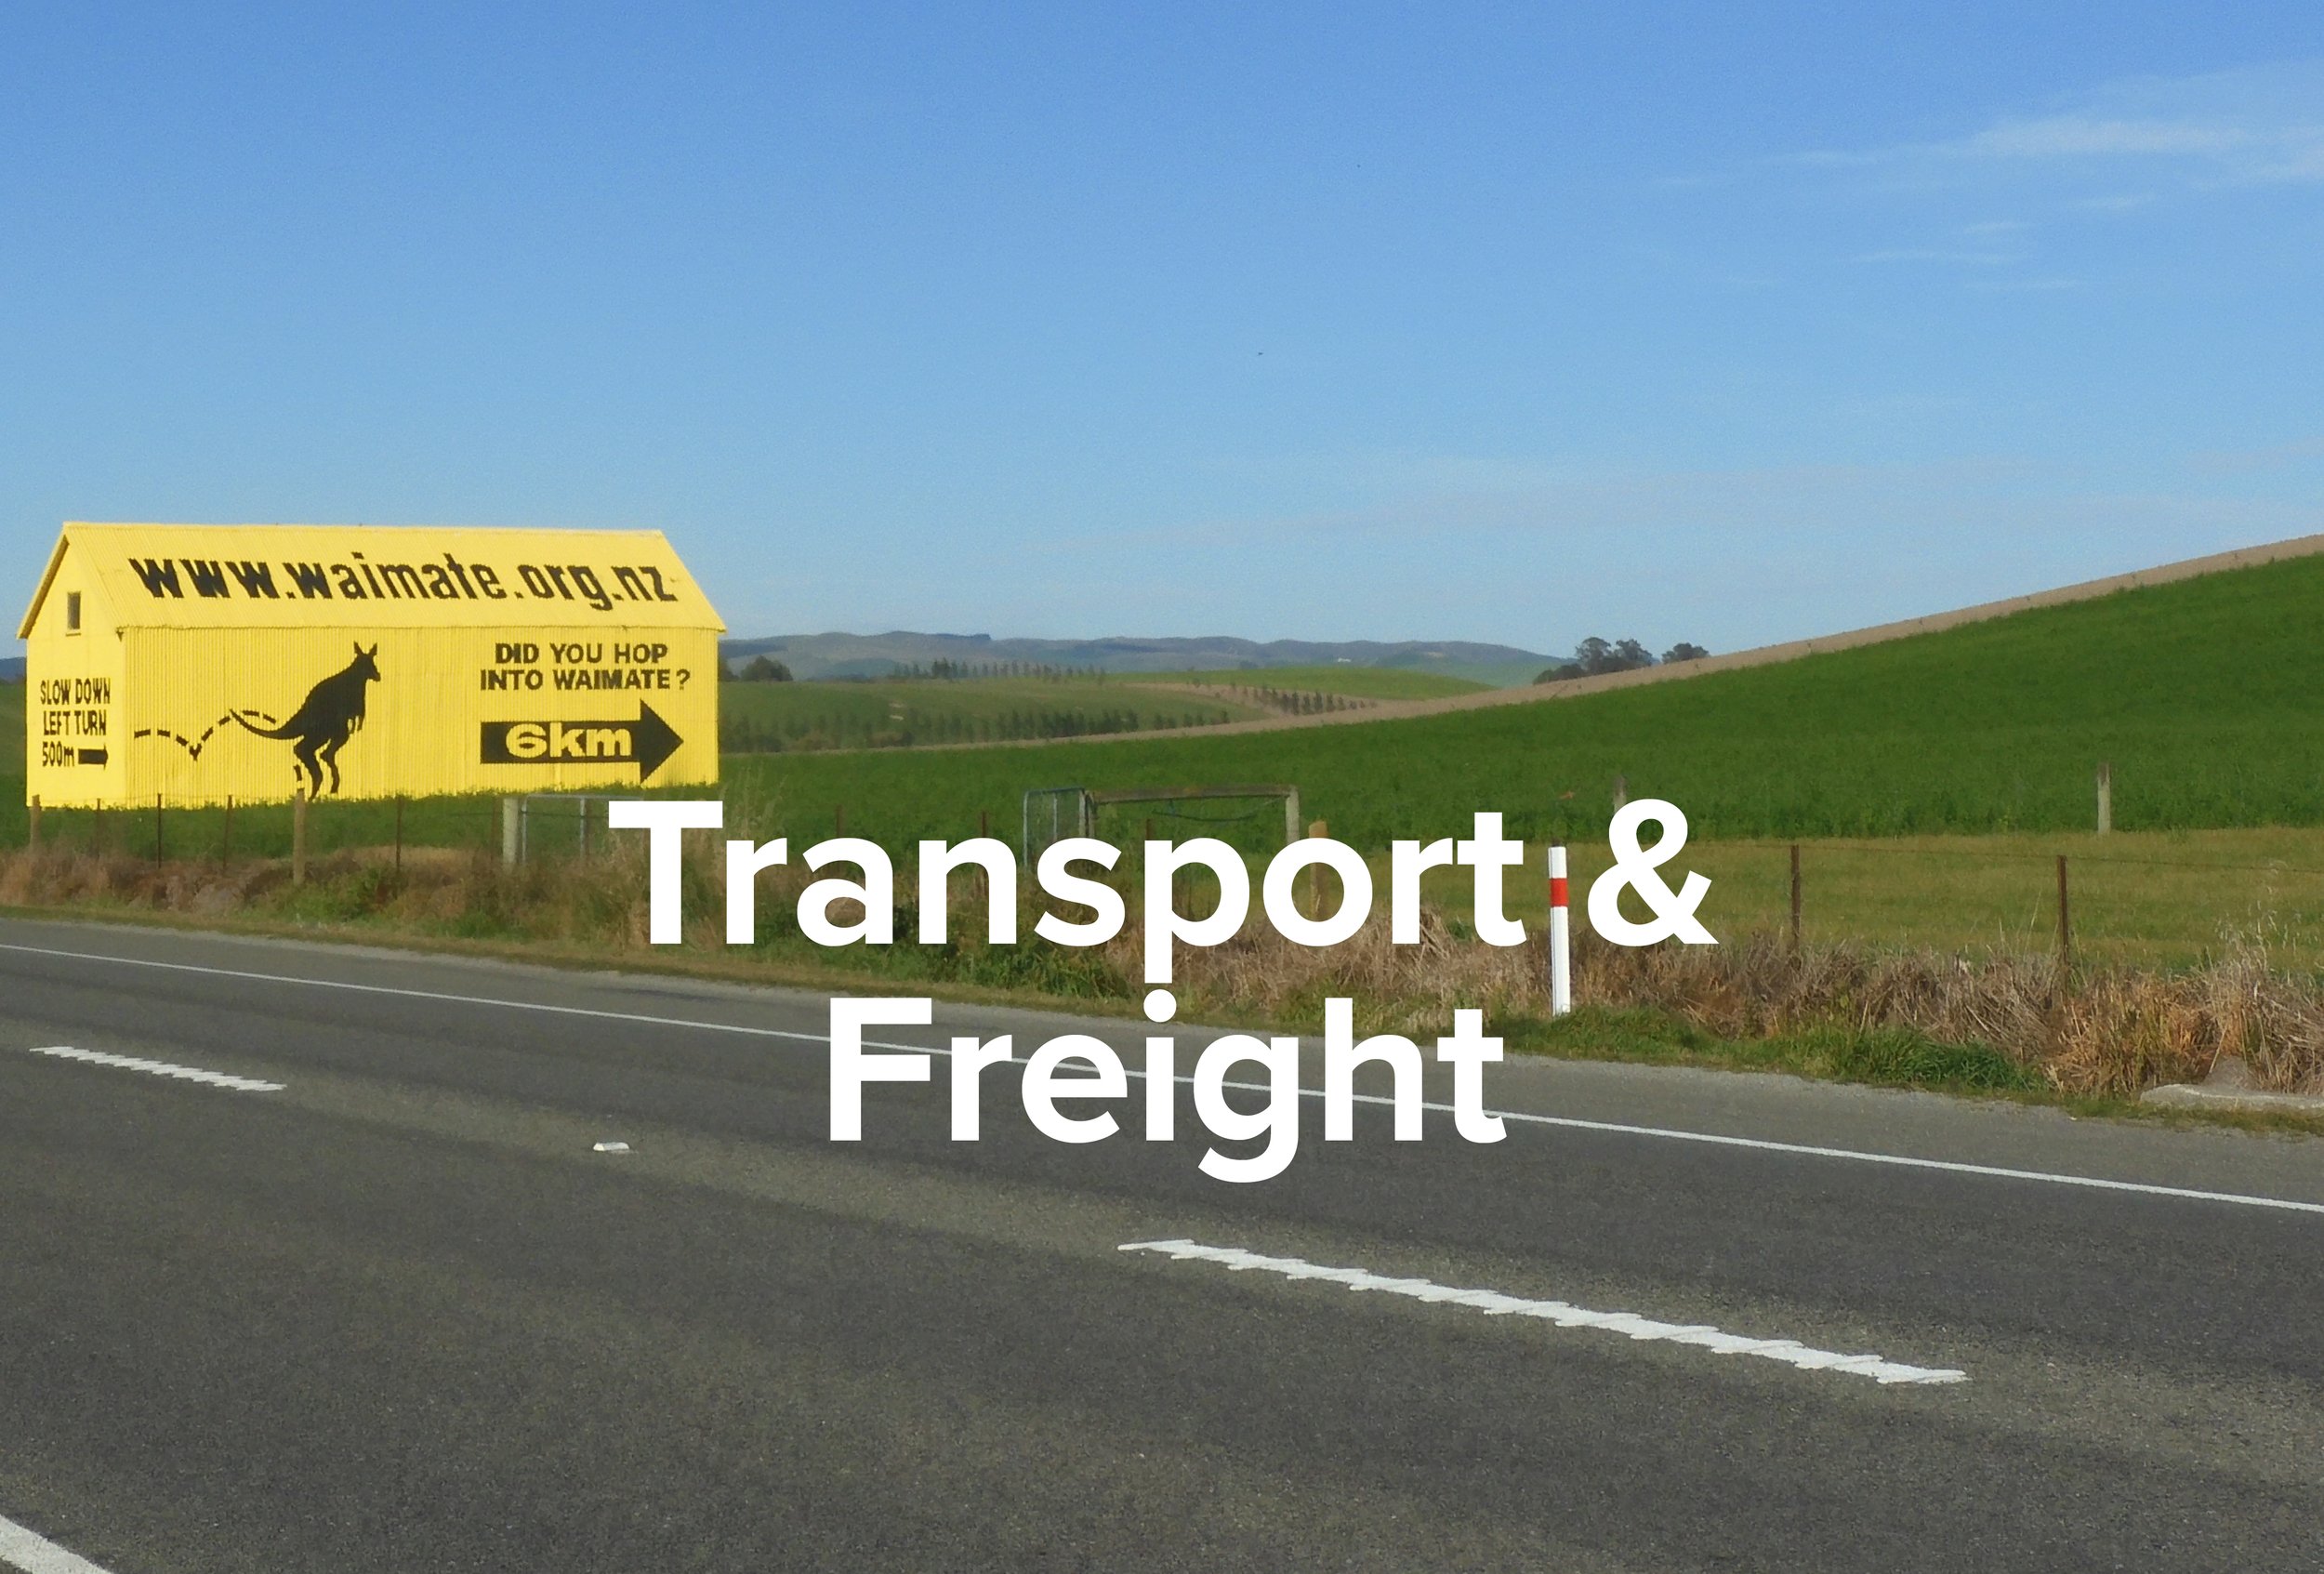 Transport & Freight. new jpg.jpg